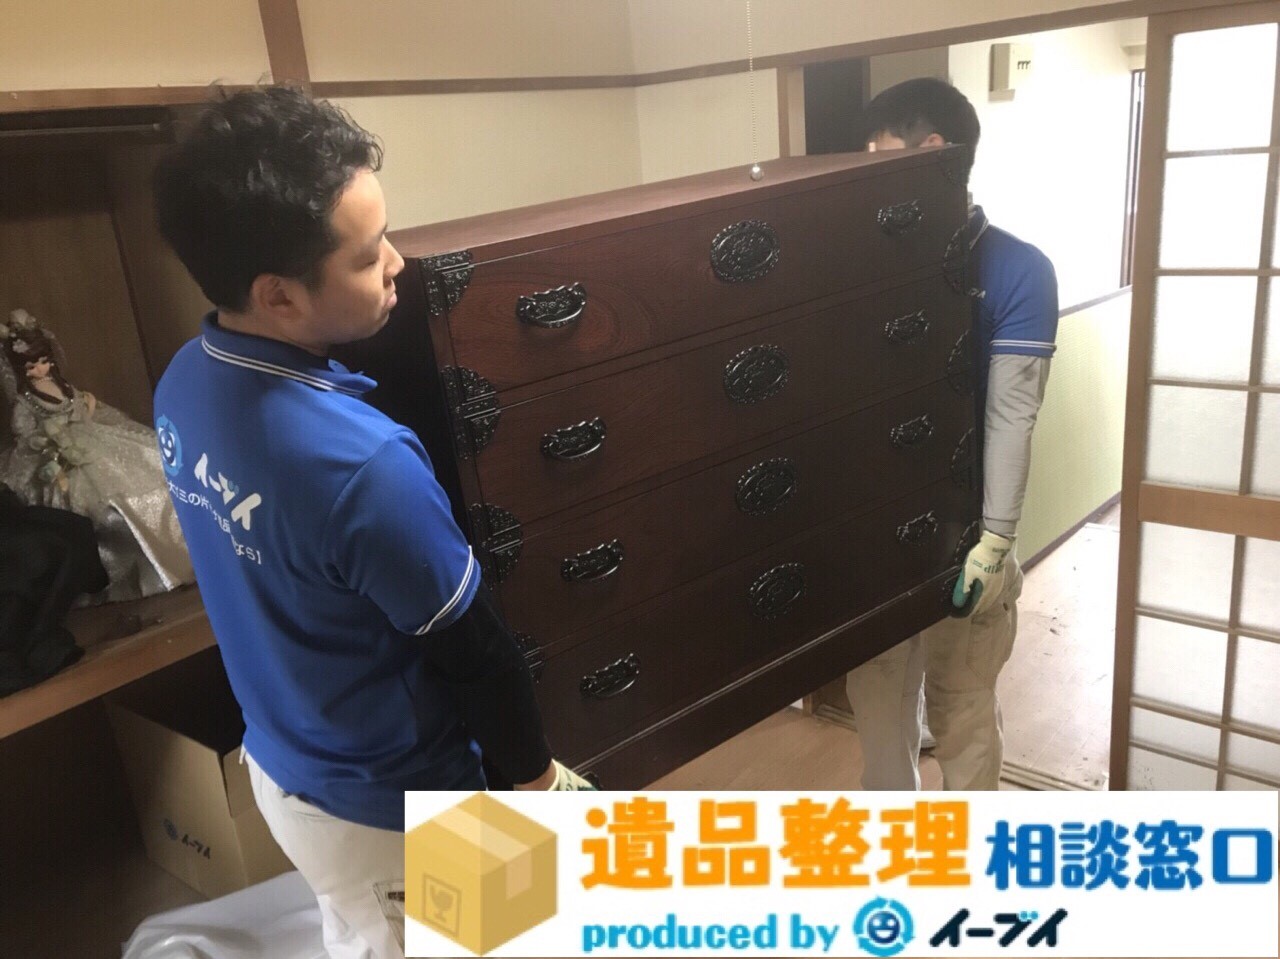 大阪府泉南市で遺品整理に伴い大型家具や電化製品を処分しました。のアイキャッチ